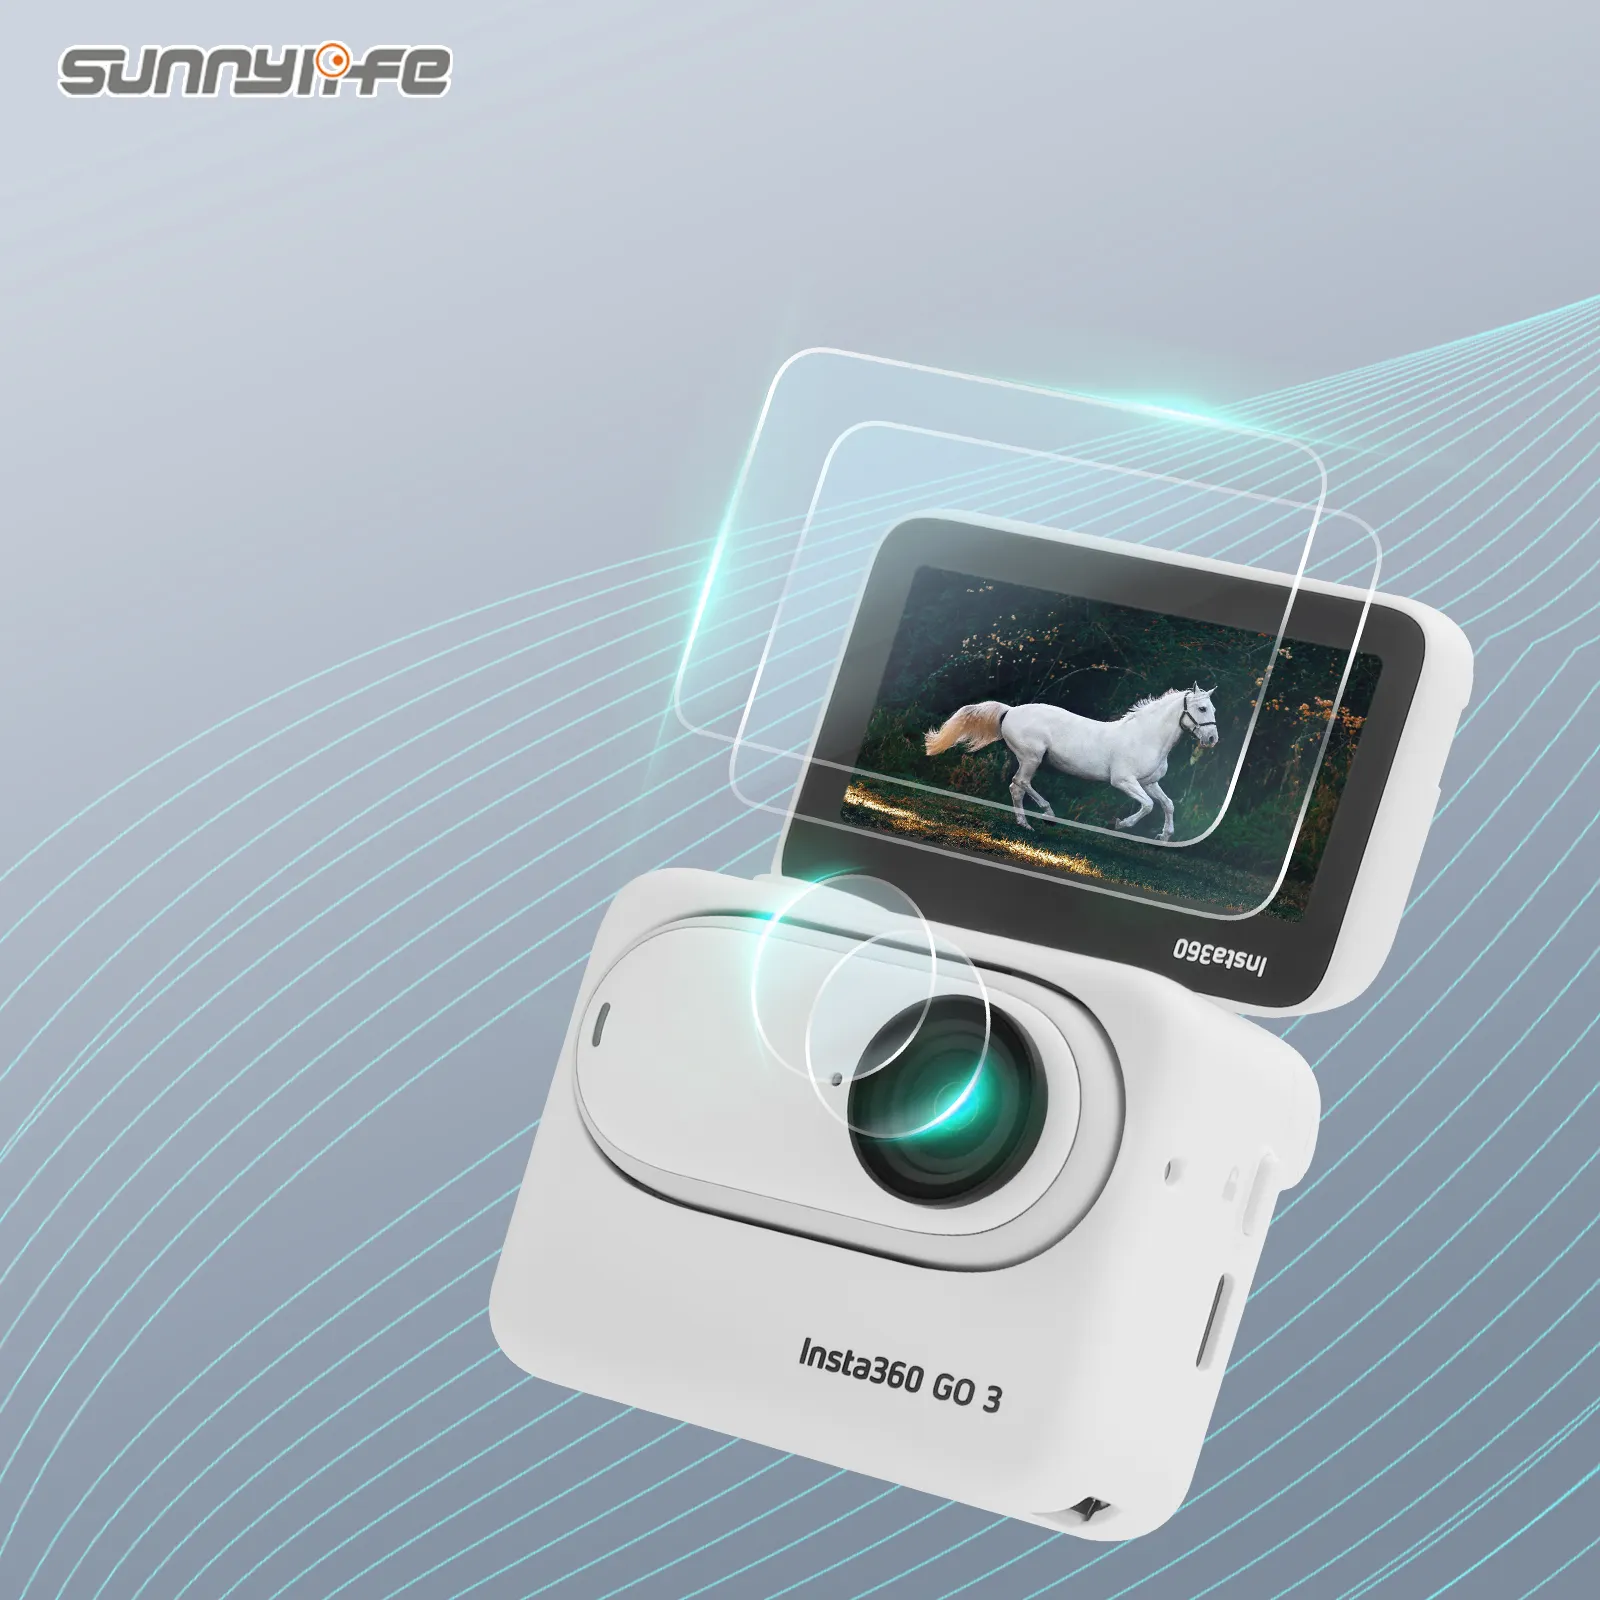 Sunnylife 2 팩 강화 유리 화면 렌즈 보호기 HD 투명 렌즈 보호 필름 Insta360 GO 3 용 스크래치 방지 액세서리